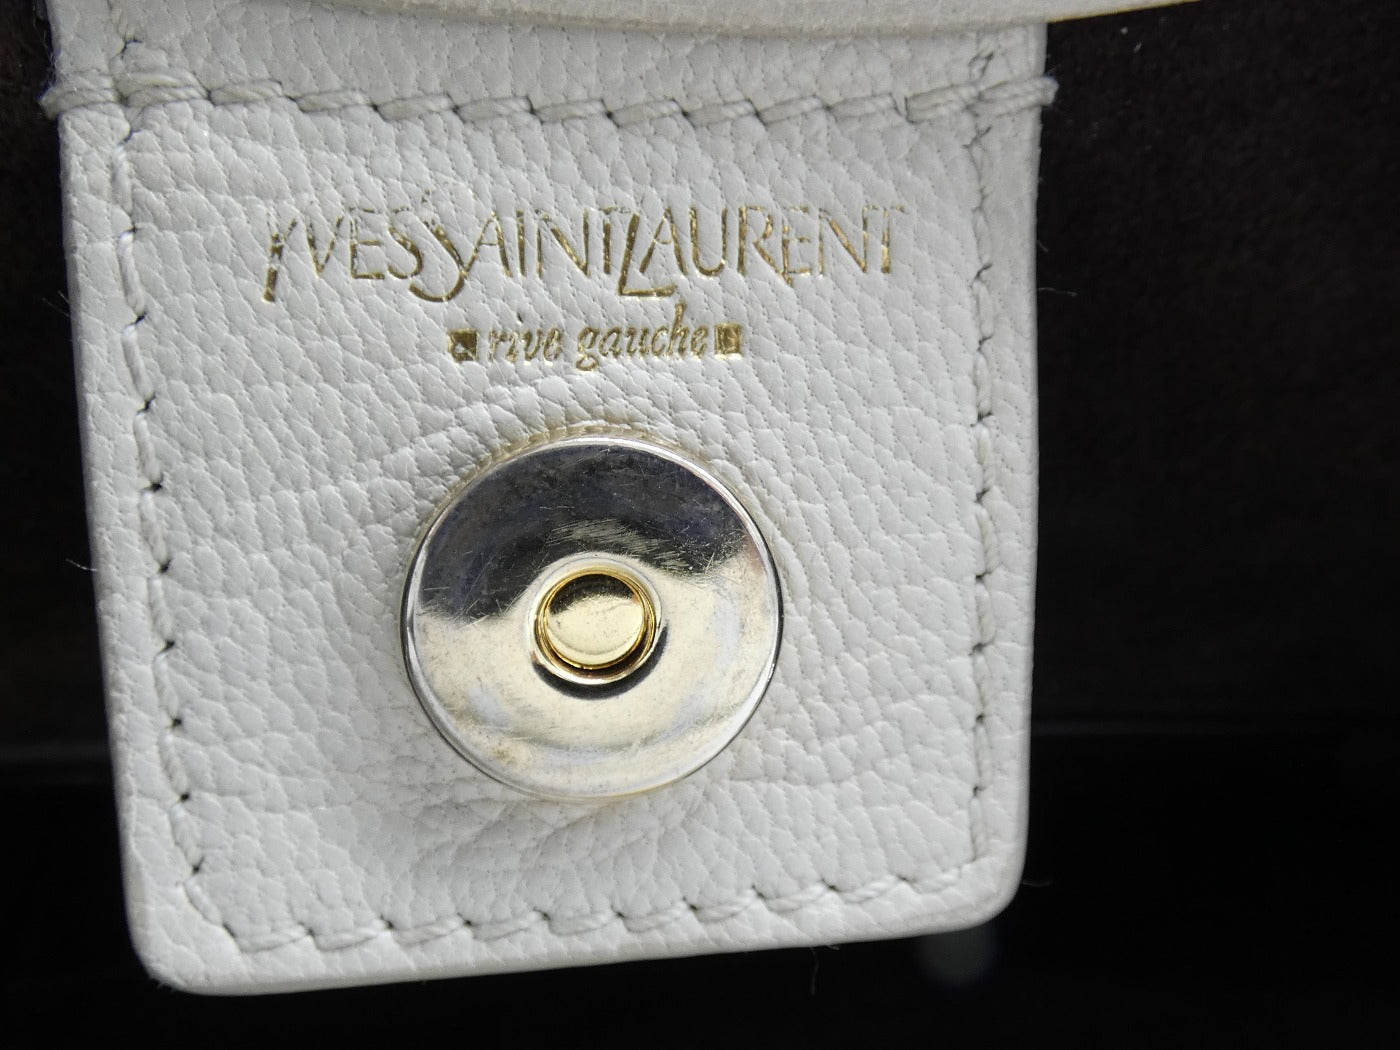 Saint Laurent - Authenticated Rive Gauche Handbag - Leather Black Plain for Women, Very Good Condition